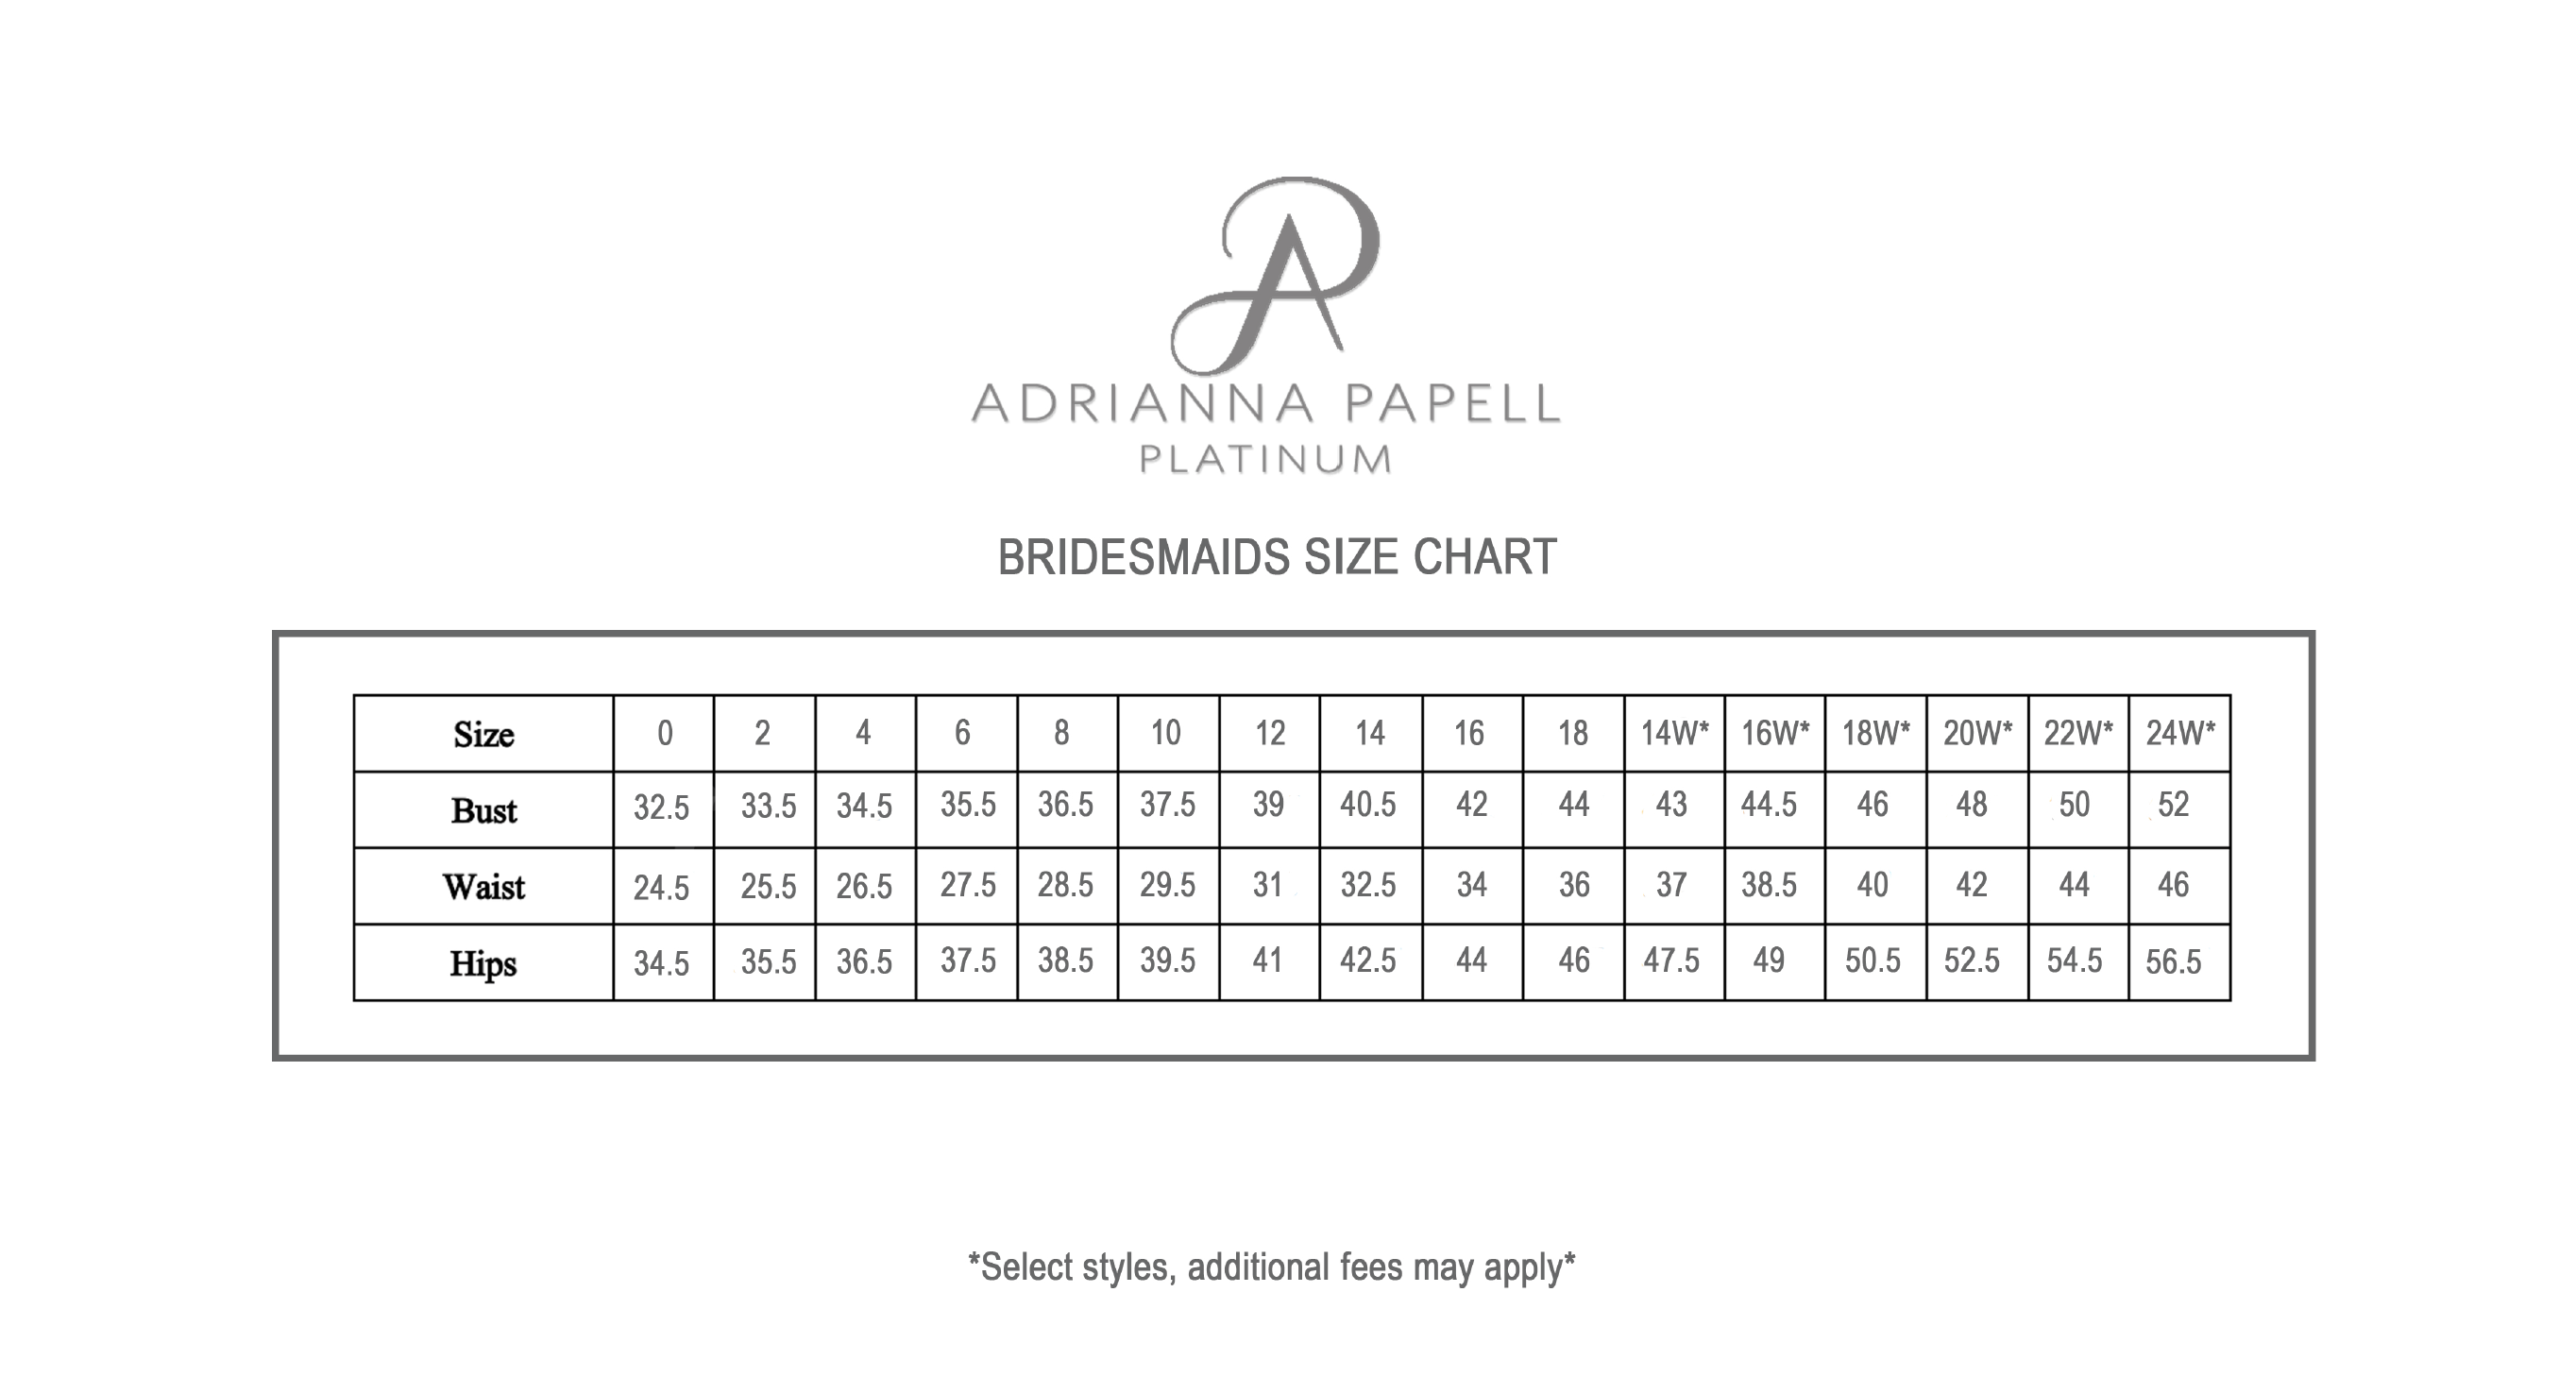 14w Dress Size Chart